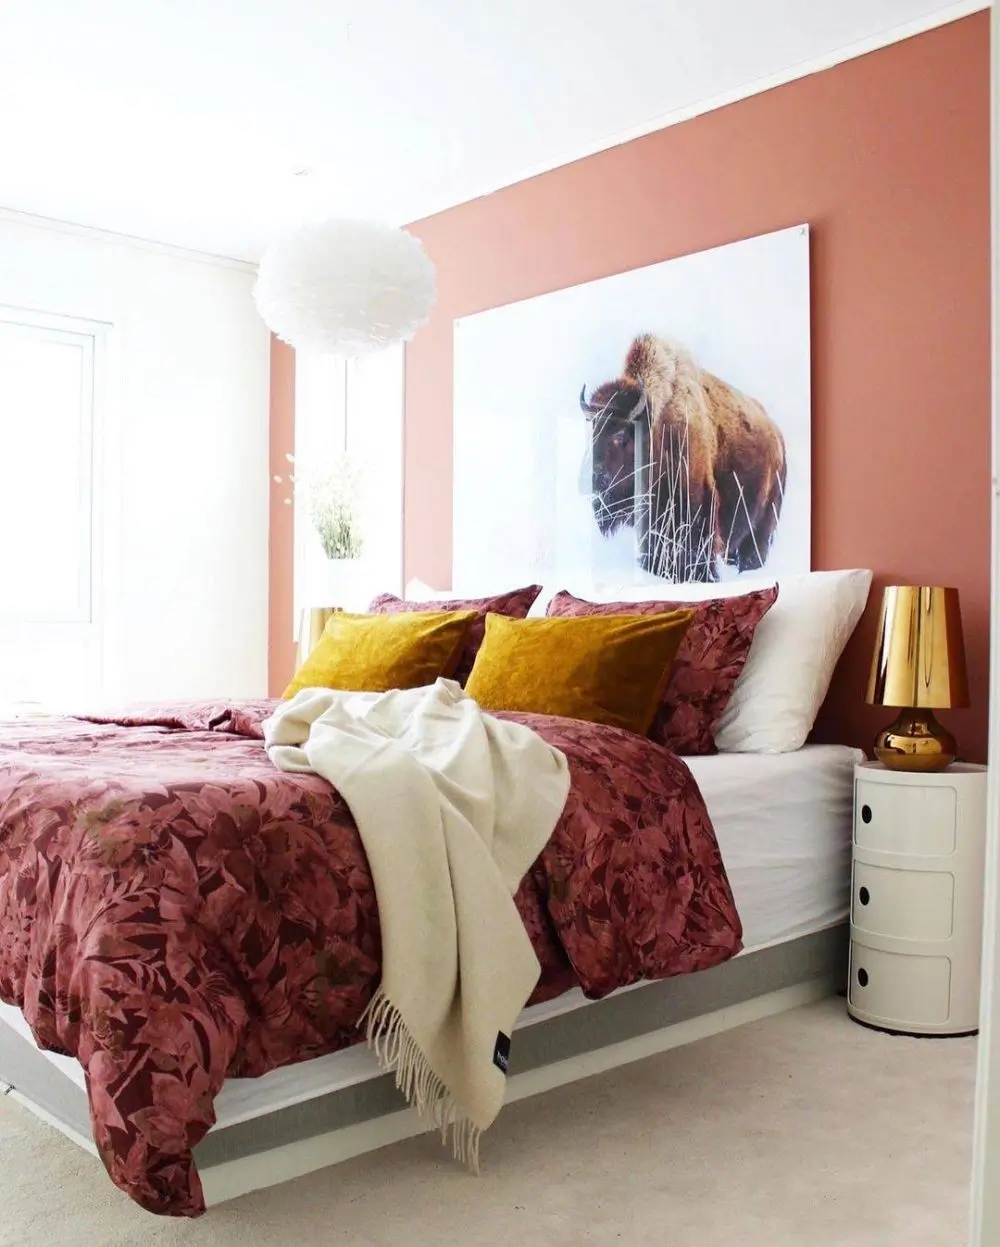 kombinasi 2 warna cat Warna Peach dan Putih kamar tidur sempit